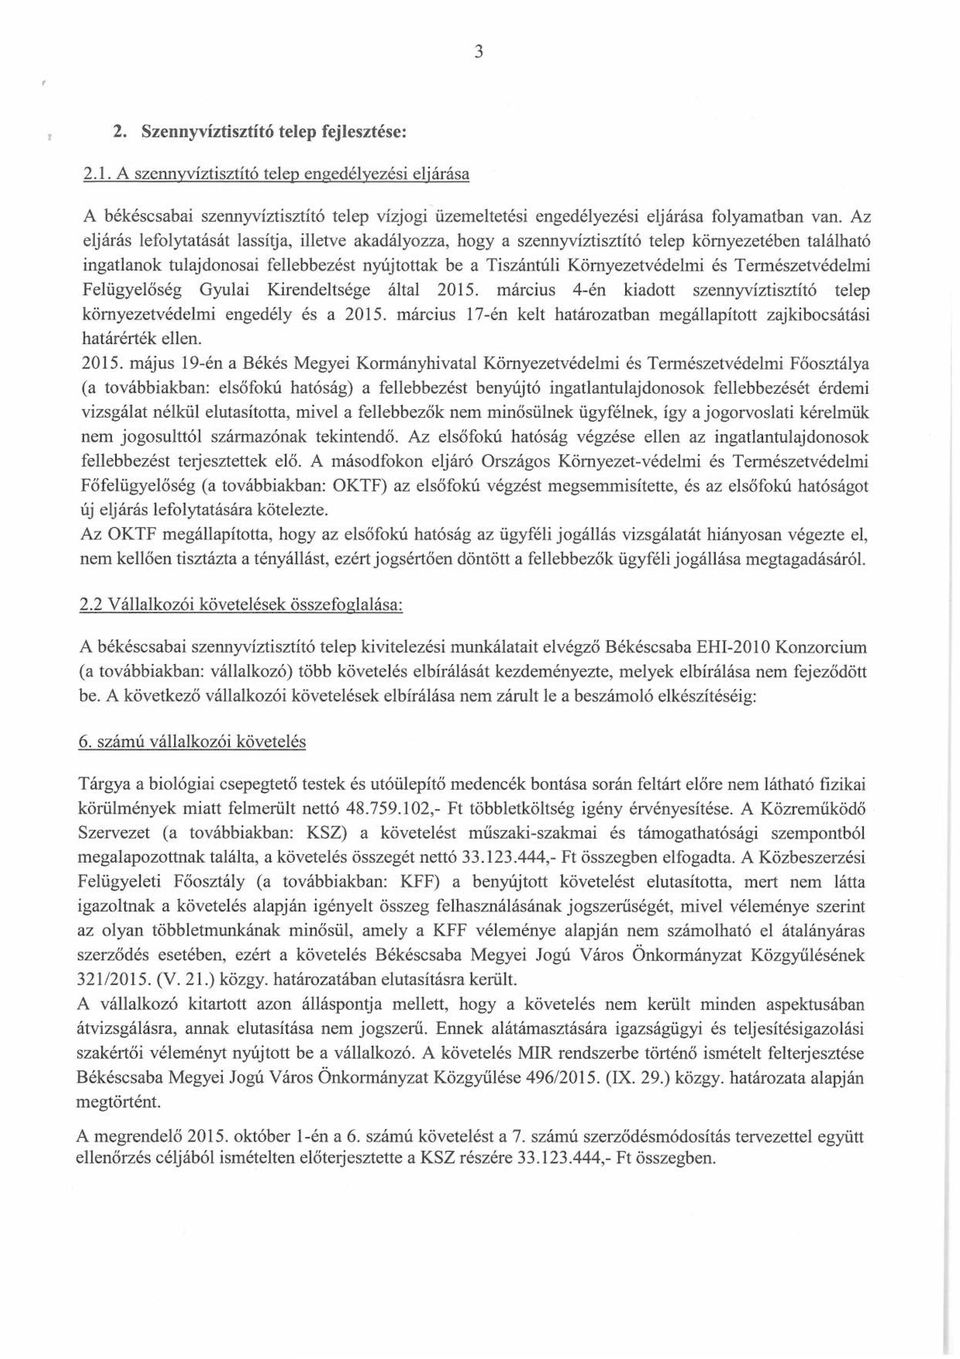 Természetvédelmi Felügyelőség Gyulai Kirendeltsége által 2015. március 4-én kiadott szennyvíztisztító telep környezetvédelmi engedély és a 2015.